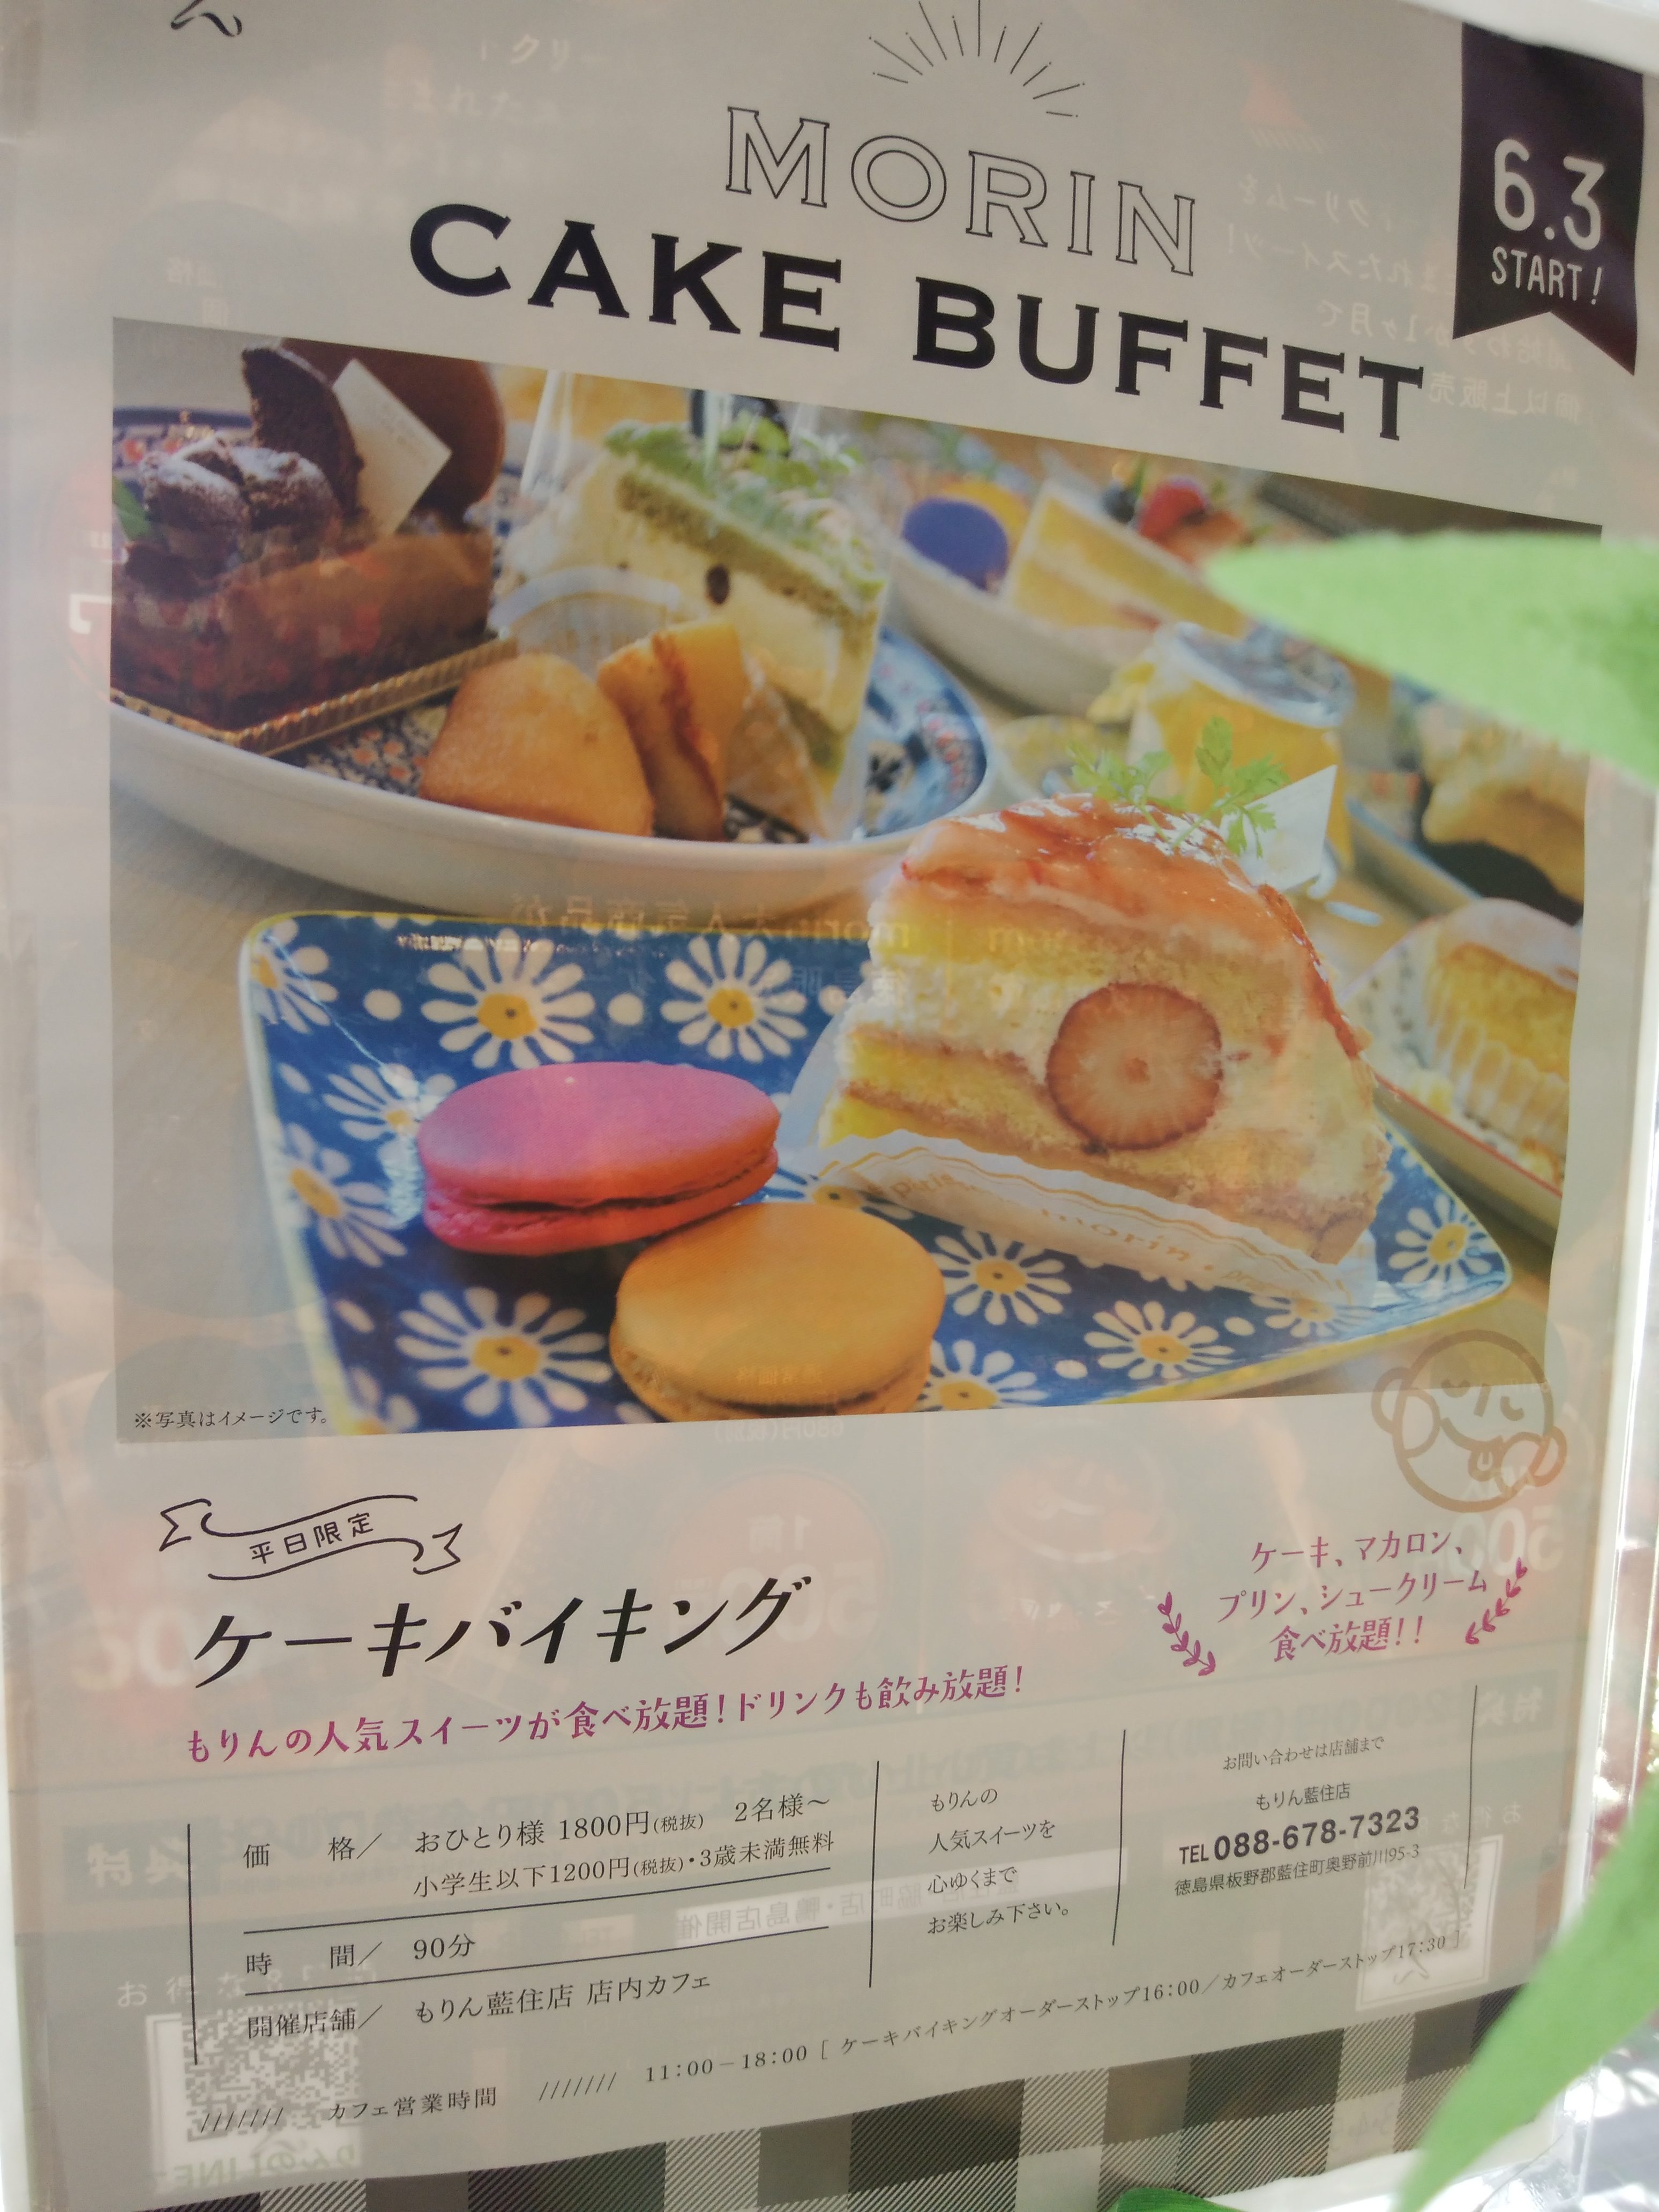 パティスリーもりん 藍住店 徳島県藍住町 三度の飯よりケーキ好き 三重県にもっとケーキバイキングを